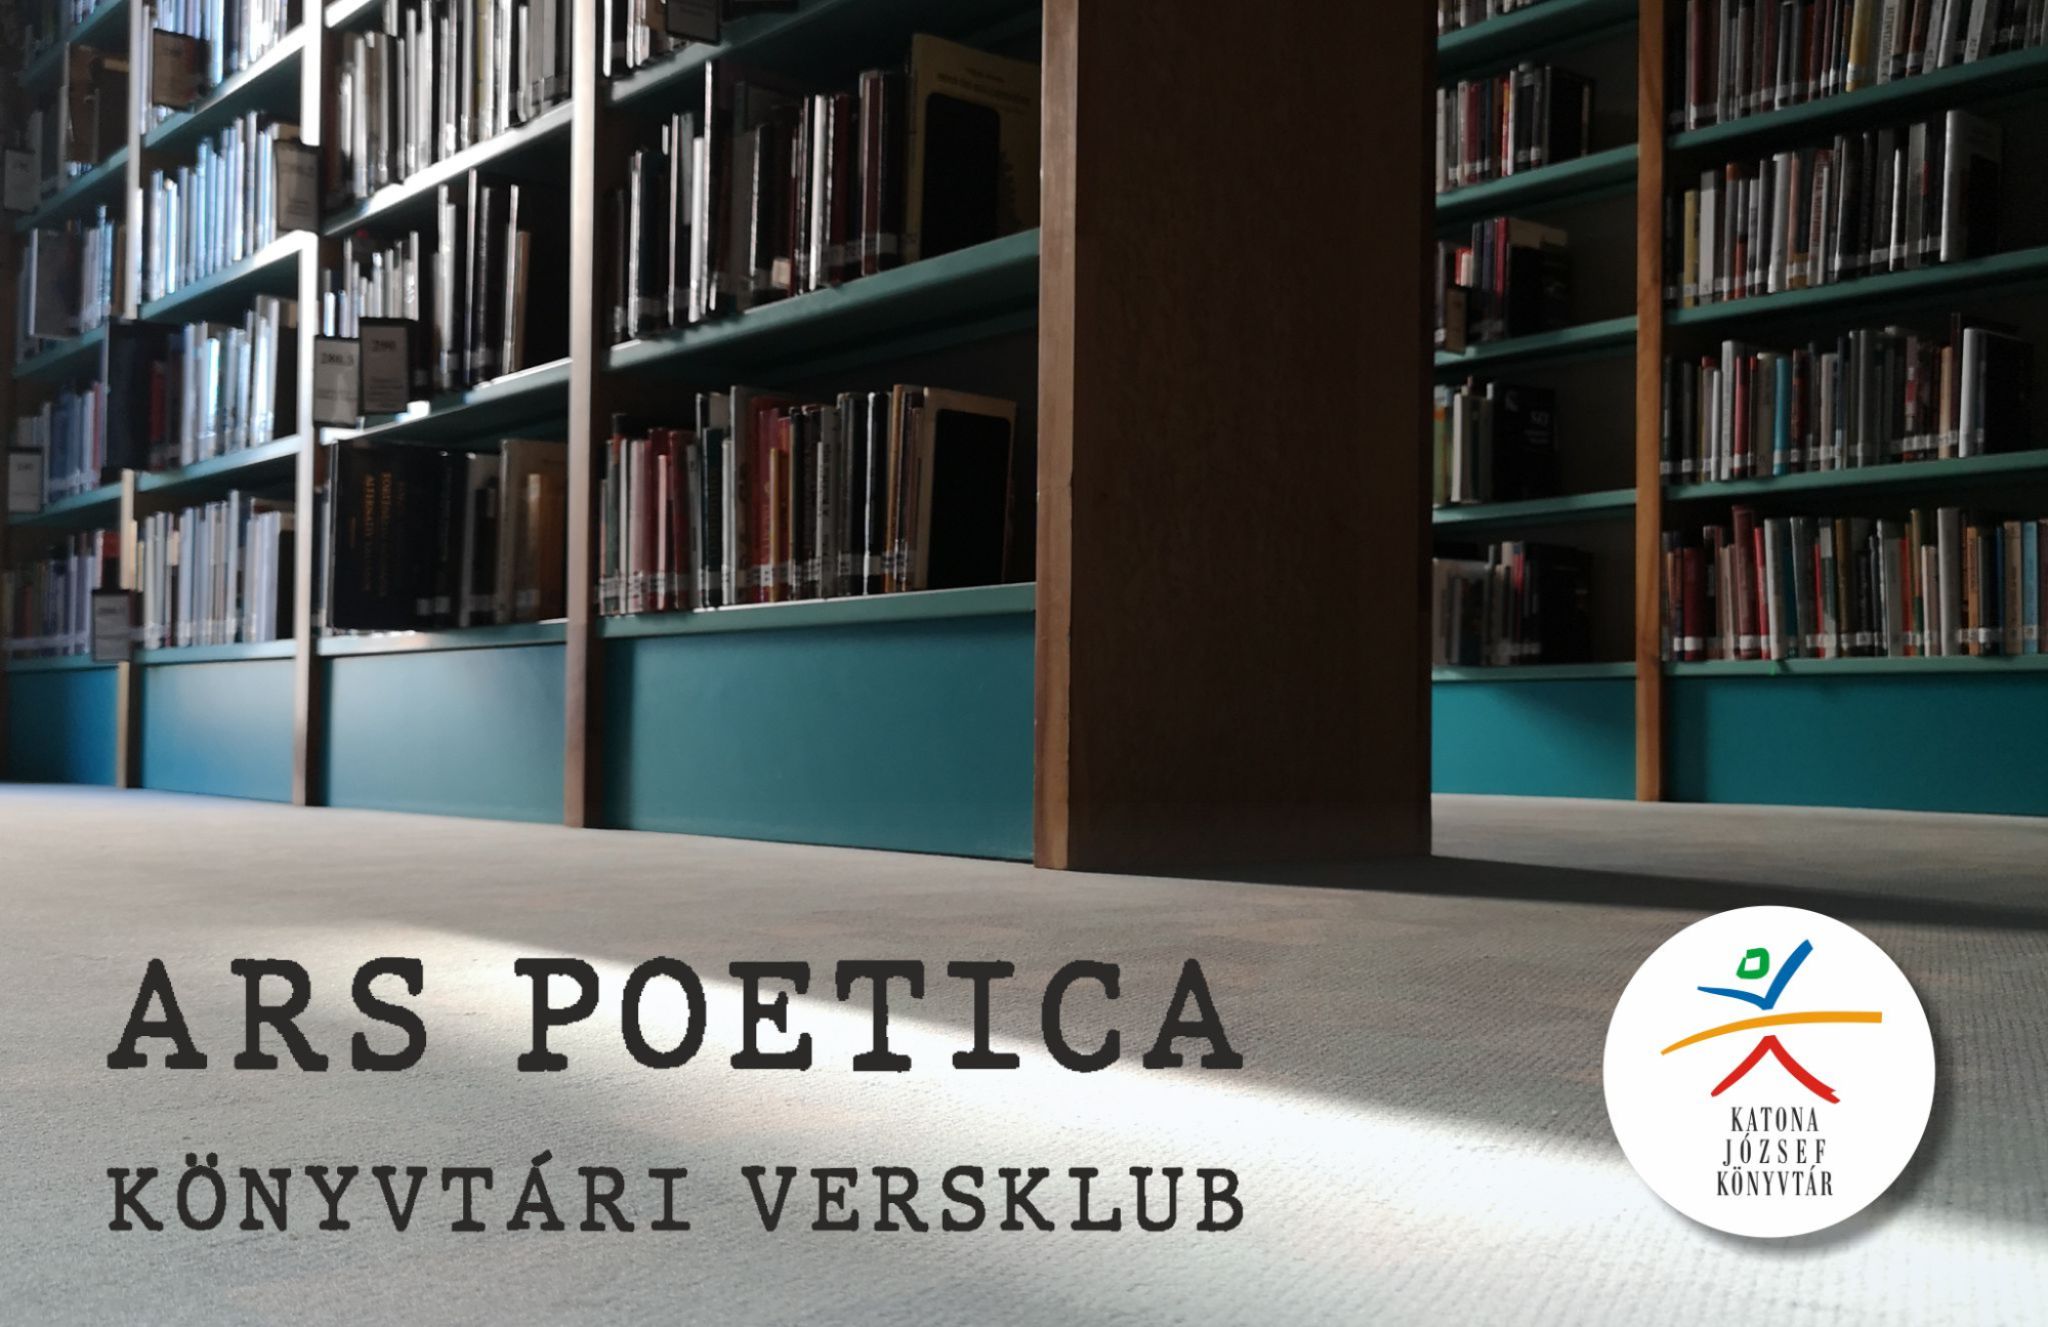  Ars poetica – könyvtári versklub